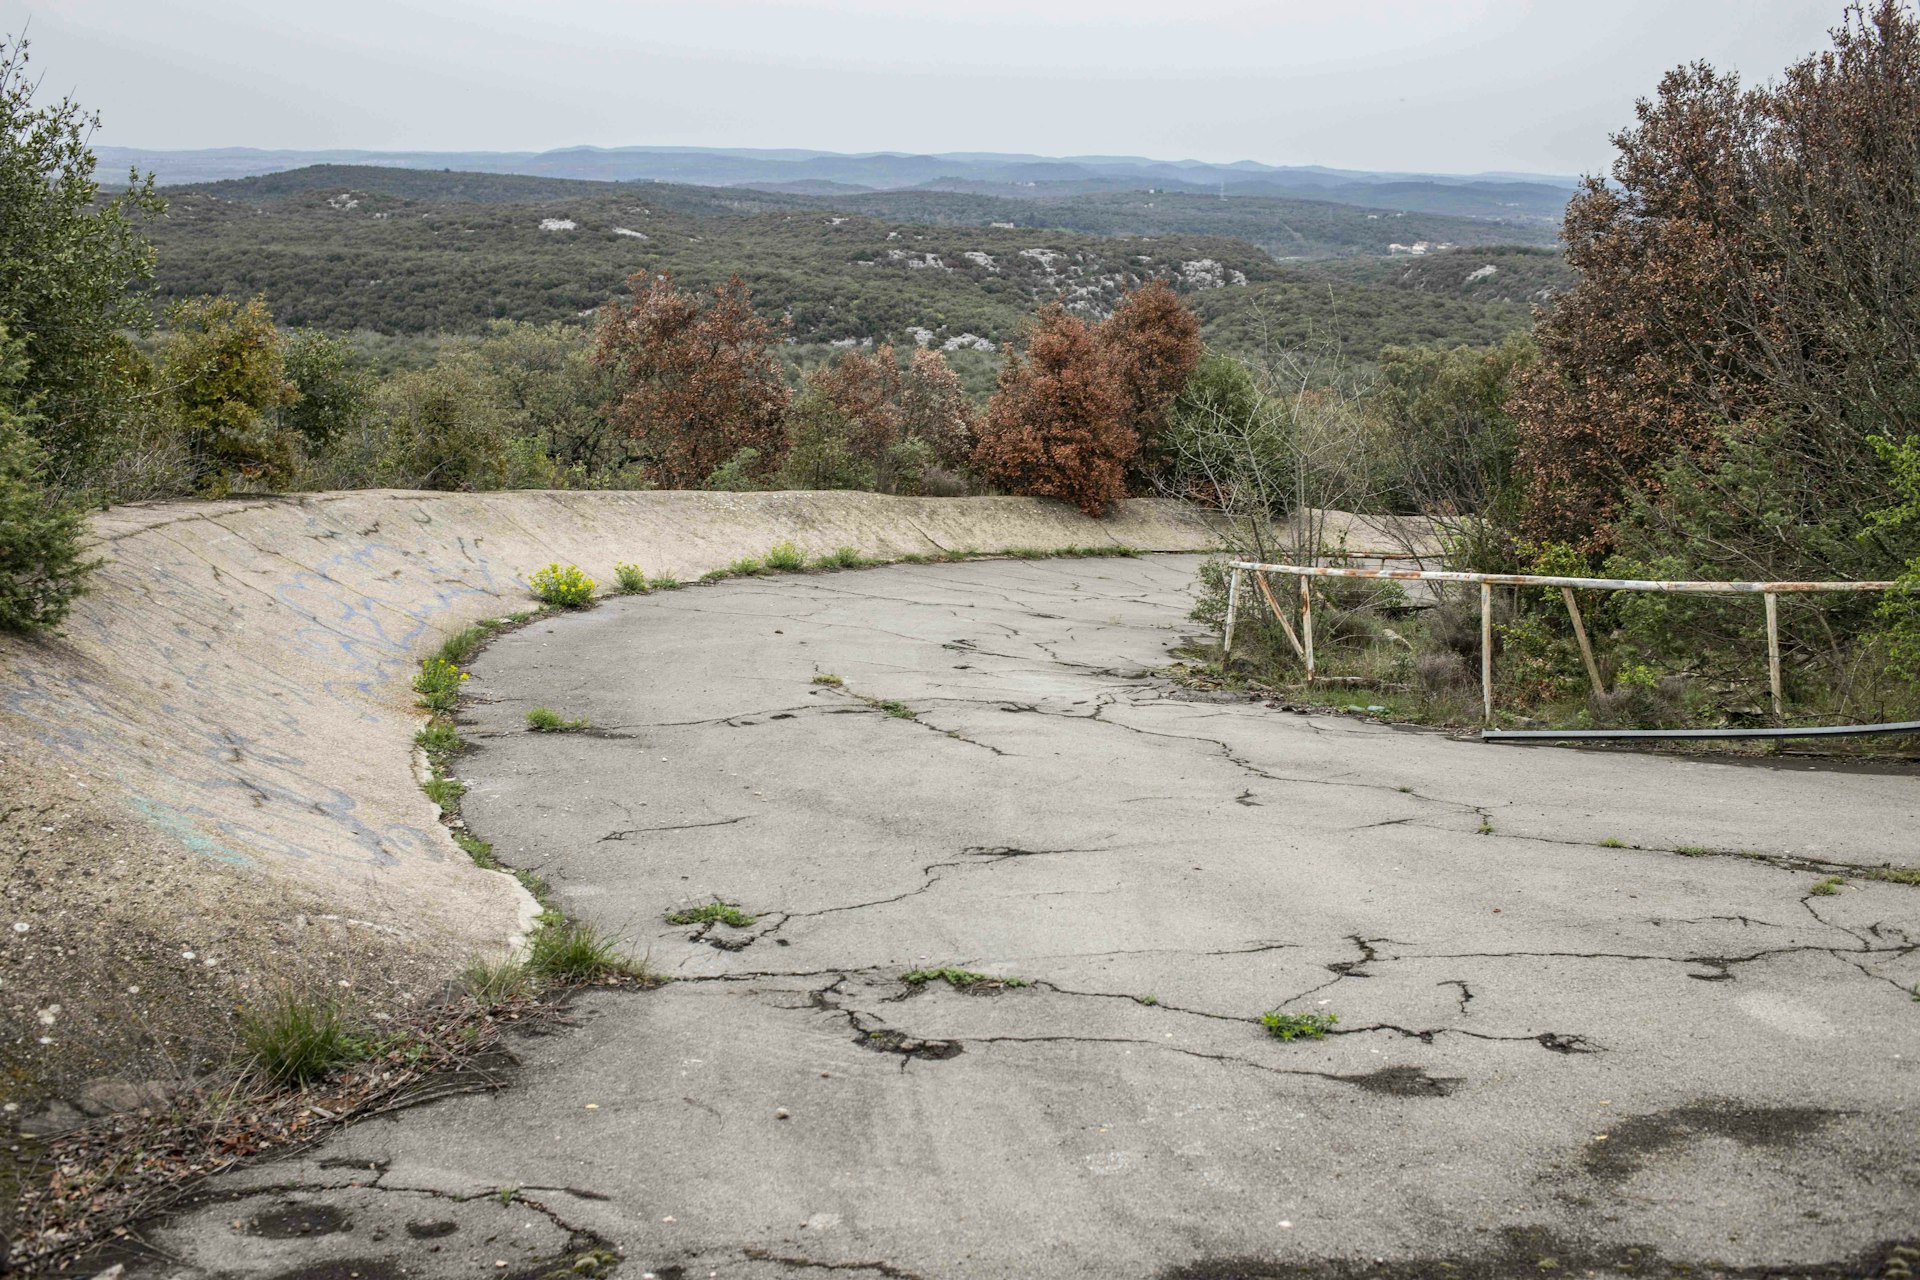 The strange story of France’s abandoned skate utopia